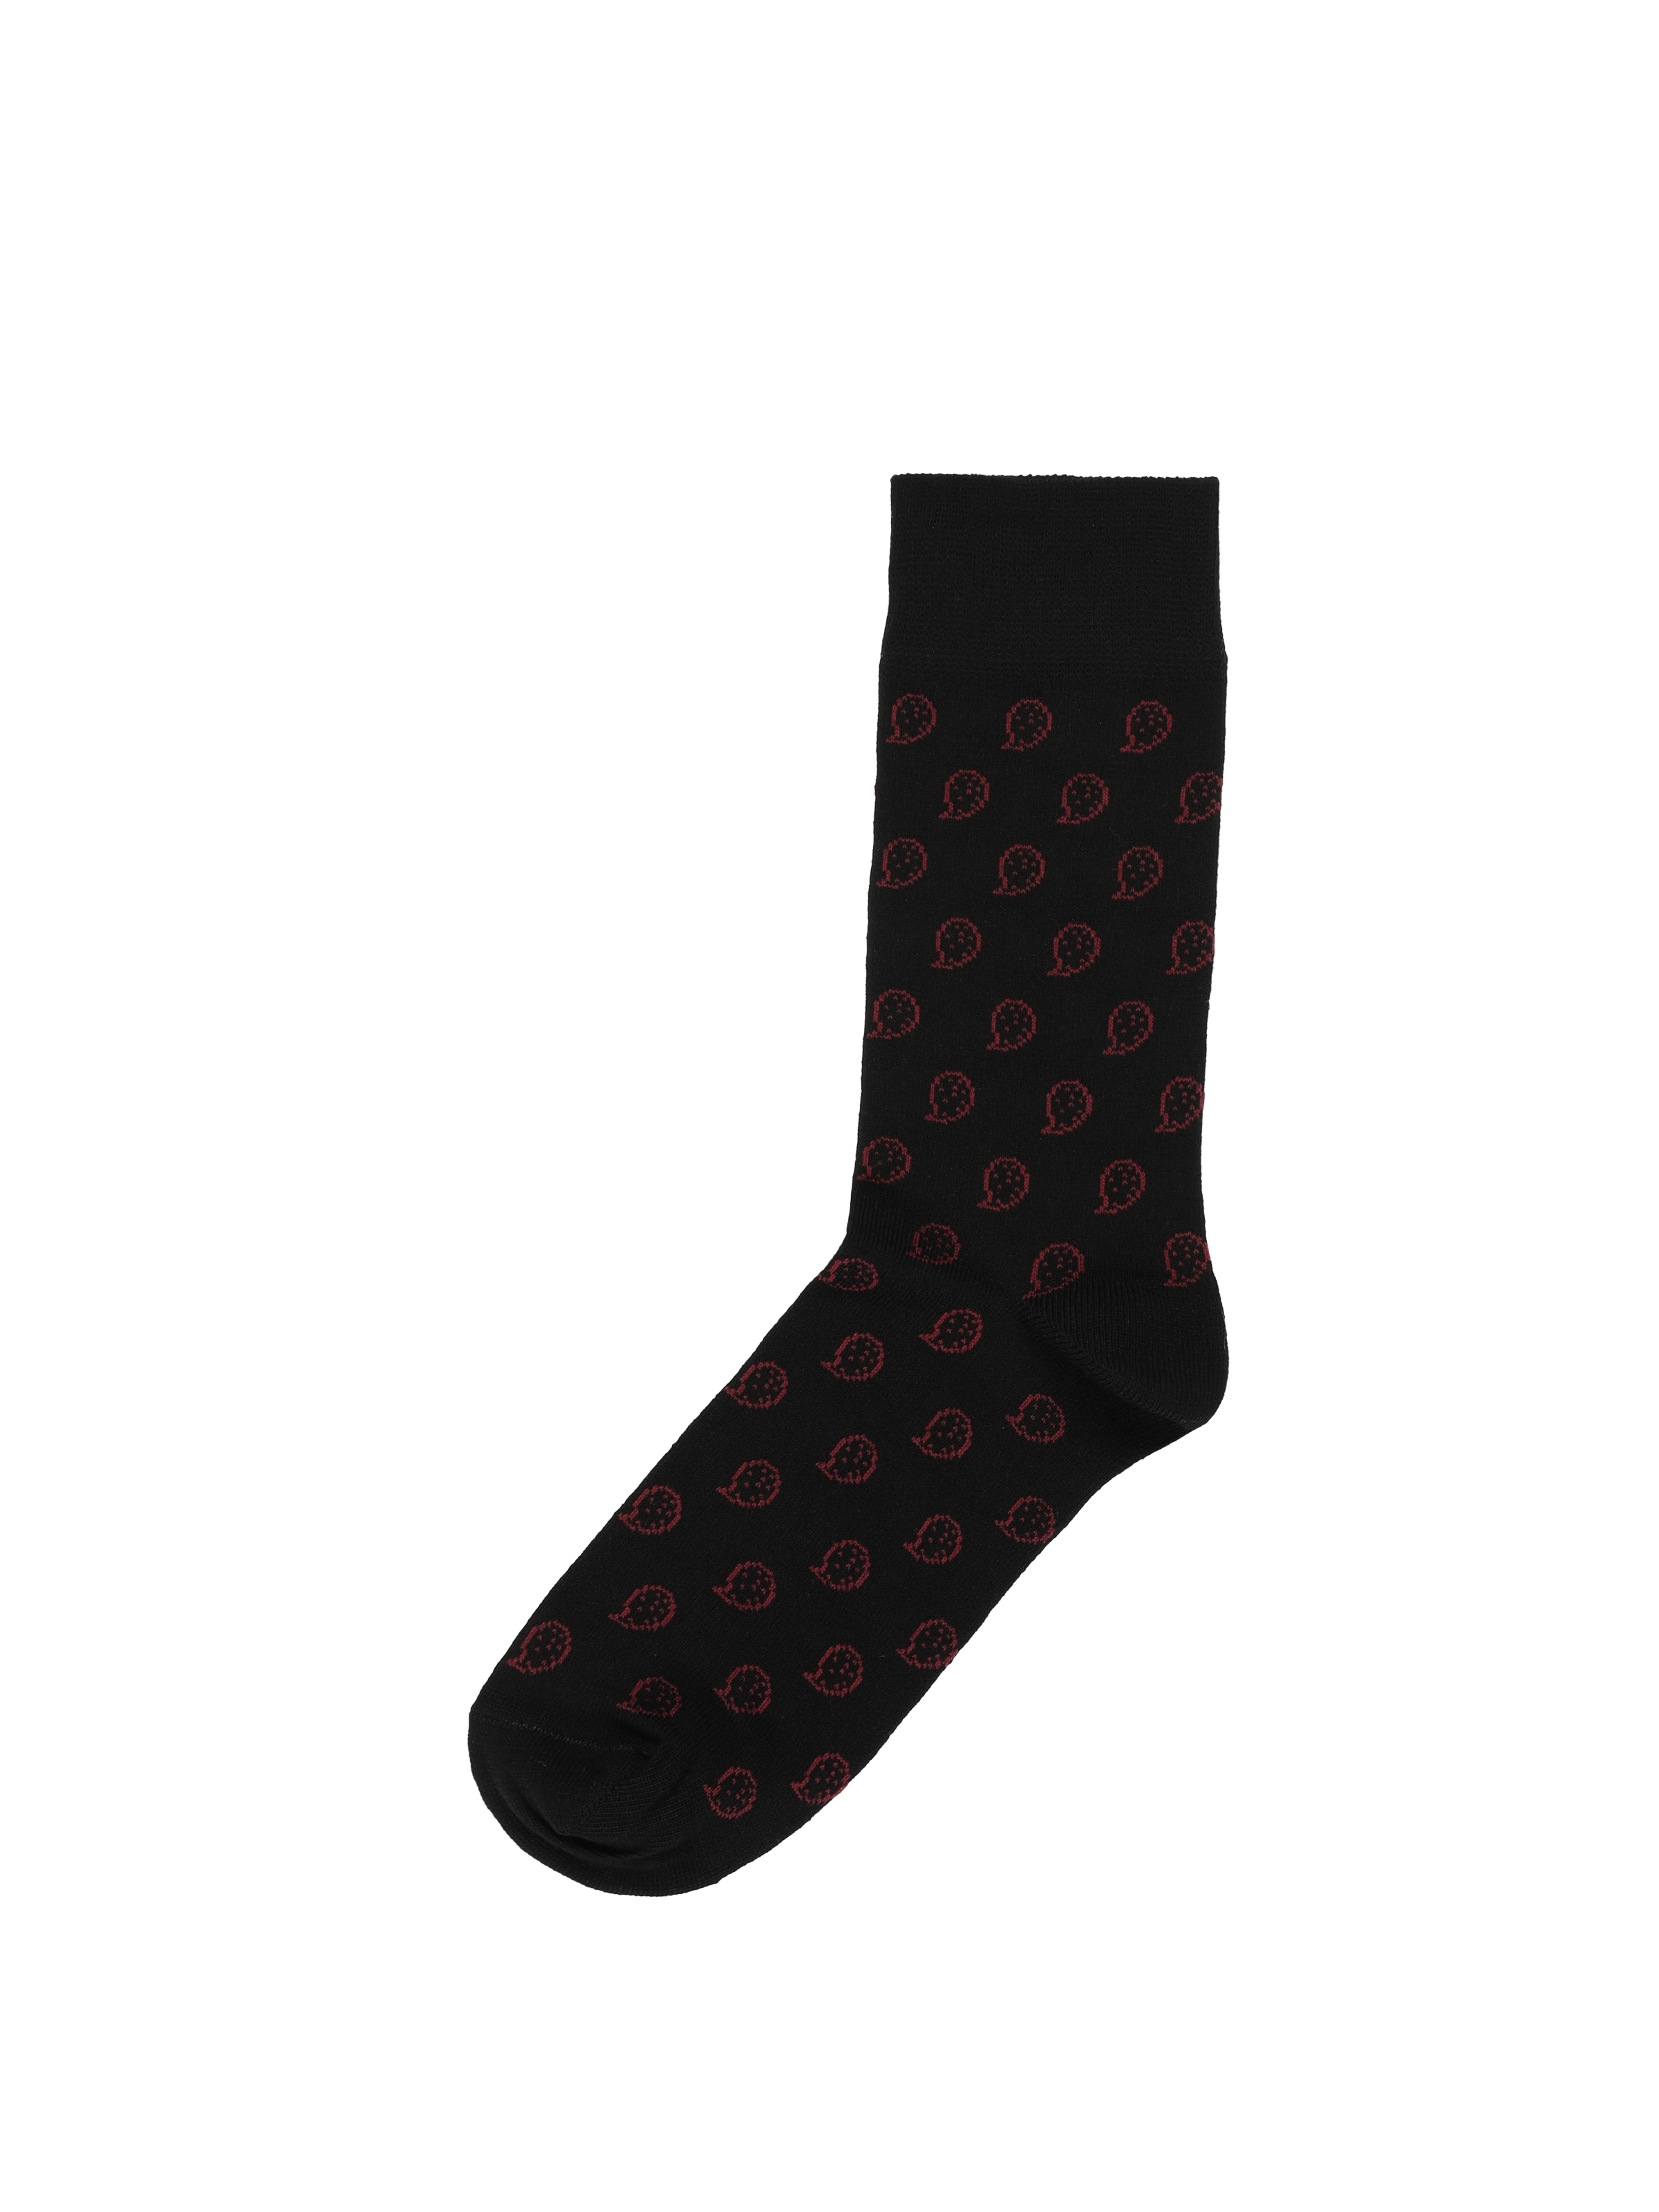 Показати інформацію про Шкарпетки Чоловічі Чорні З Принтом Cl1062130